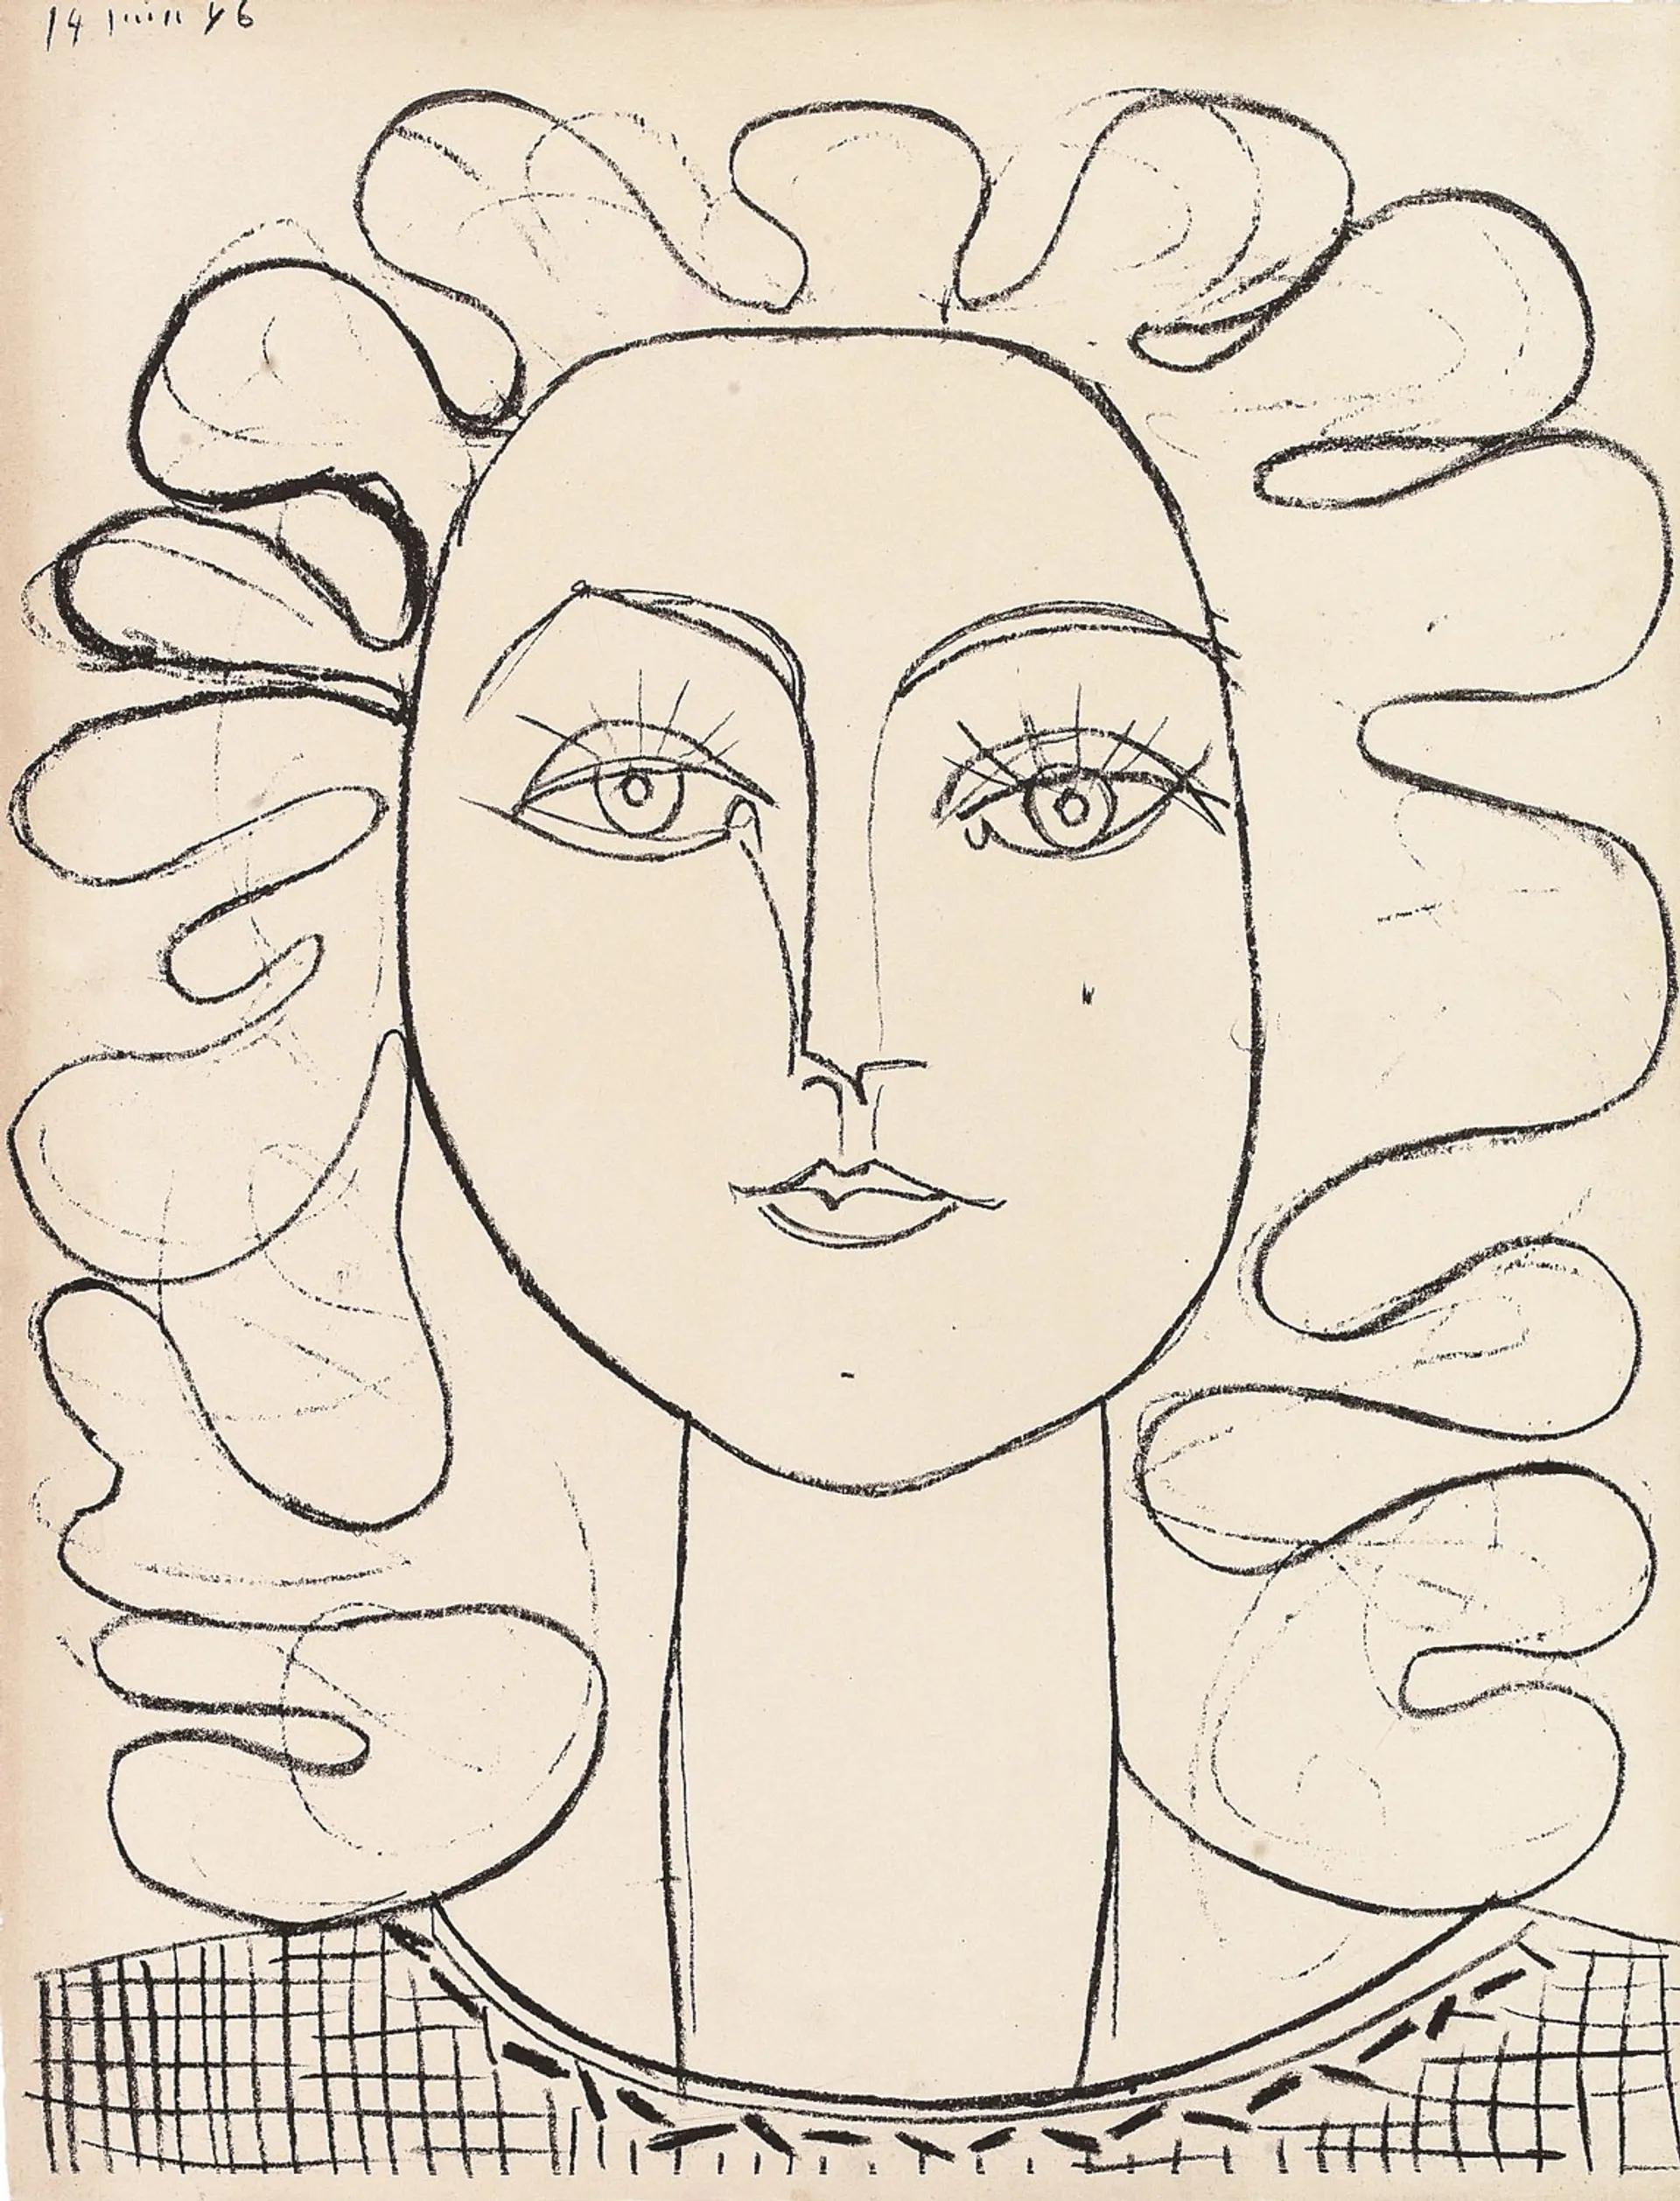 Pablo Picasso, Françoise aux cheveux ondulés (1946). © Succession Pablo Picasso, VG Bild-Kunst, Bonn